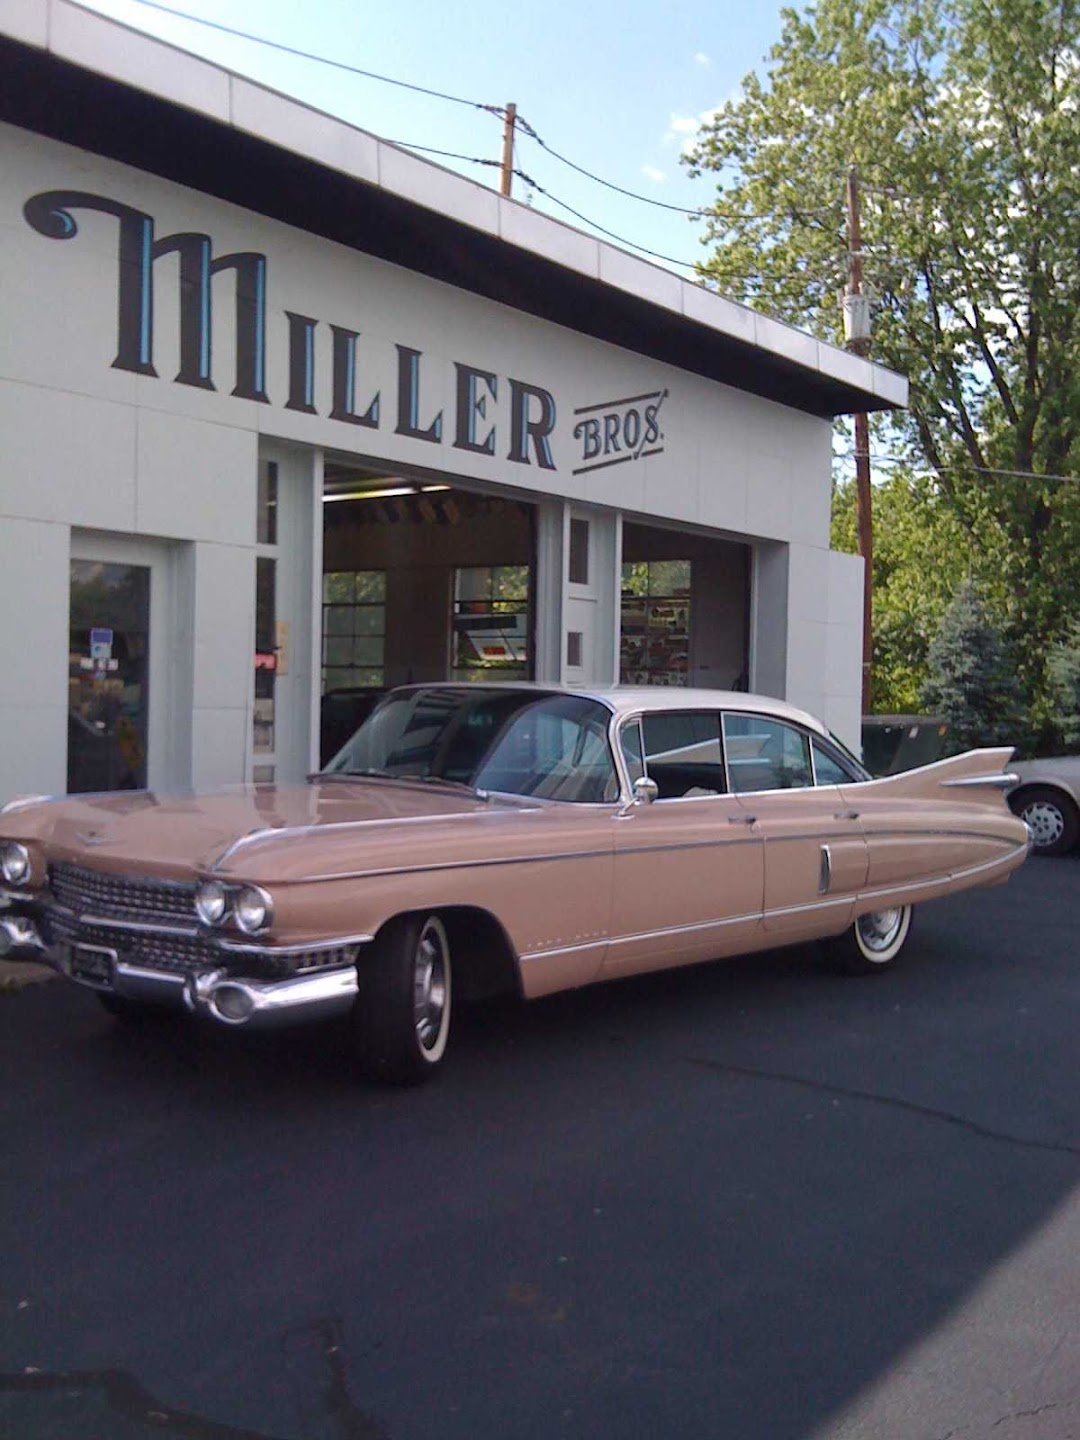 Miller Bros. Auto Sales